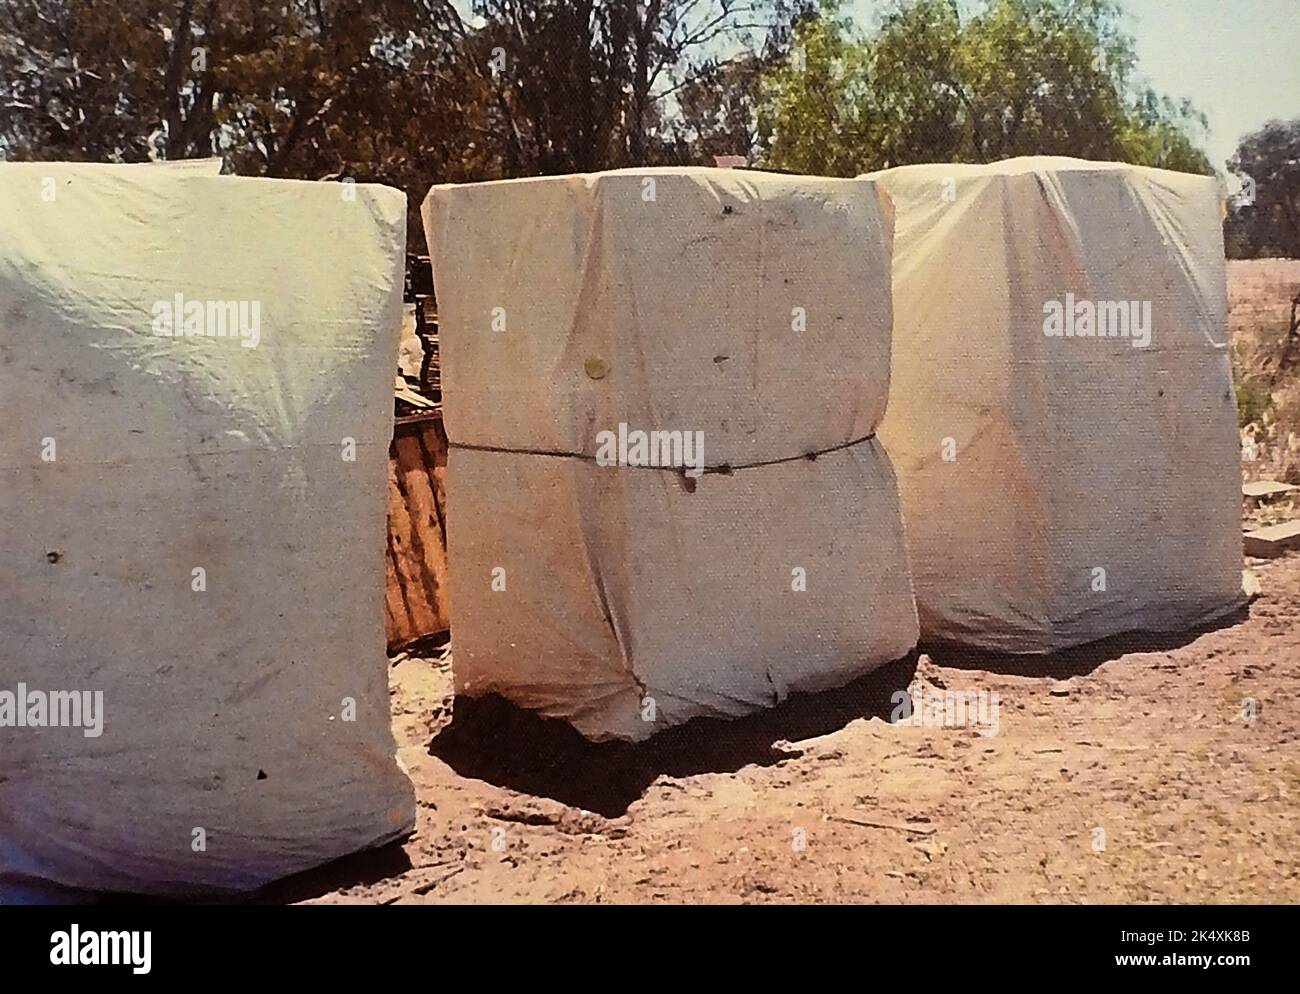 Un'istantanea del 1970 di una parte della terra di Kevin Twigden a Waikerie, Australia, che mostra le tende utilizzate per asciugare e trattare le albicocche con anidride solforosa (SO₂). All'interno delle tende sono impilate vaschette di albicocche senza pietre che sono vendute separatamente per l'industria cosmetica. Foto Stock